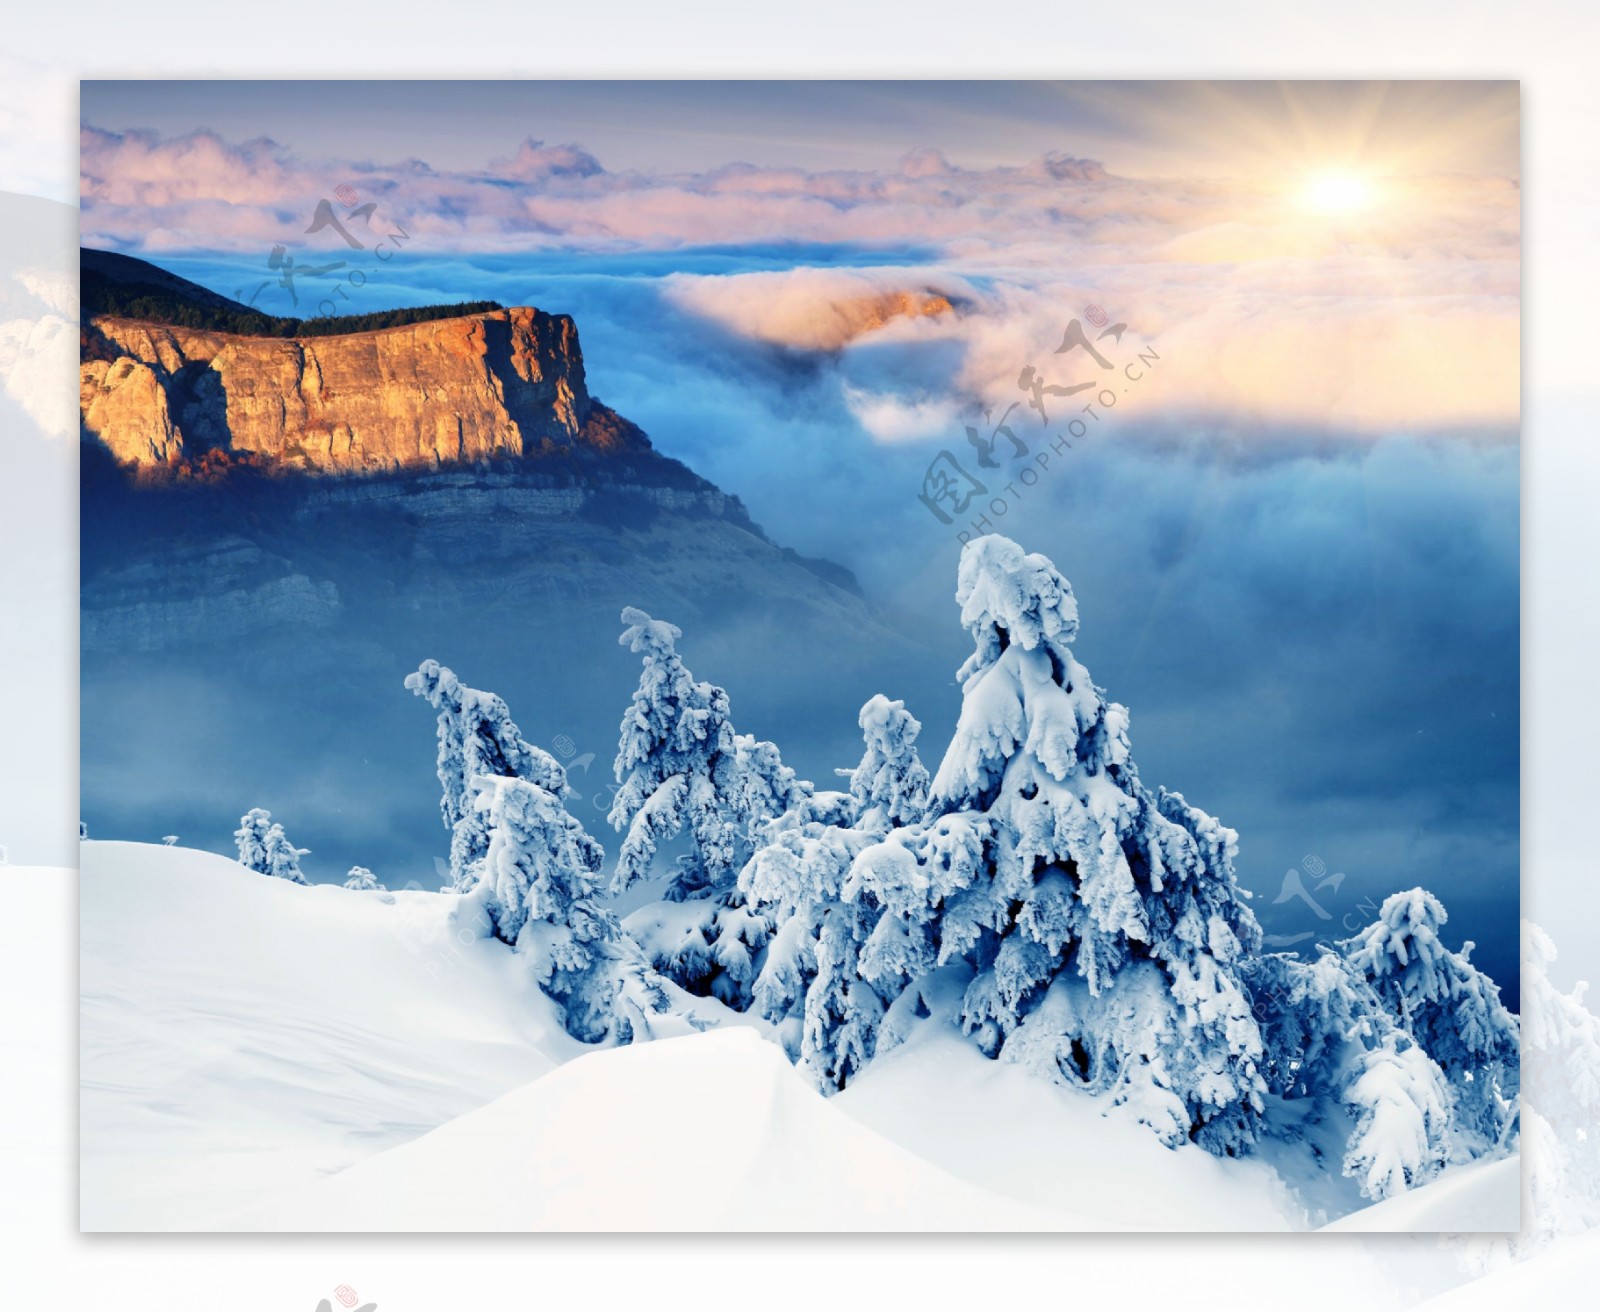 雪山高原风景图片